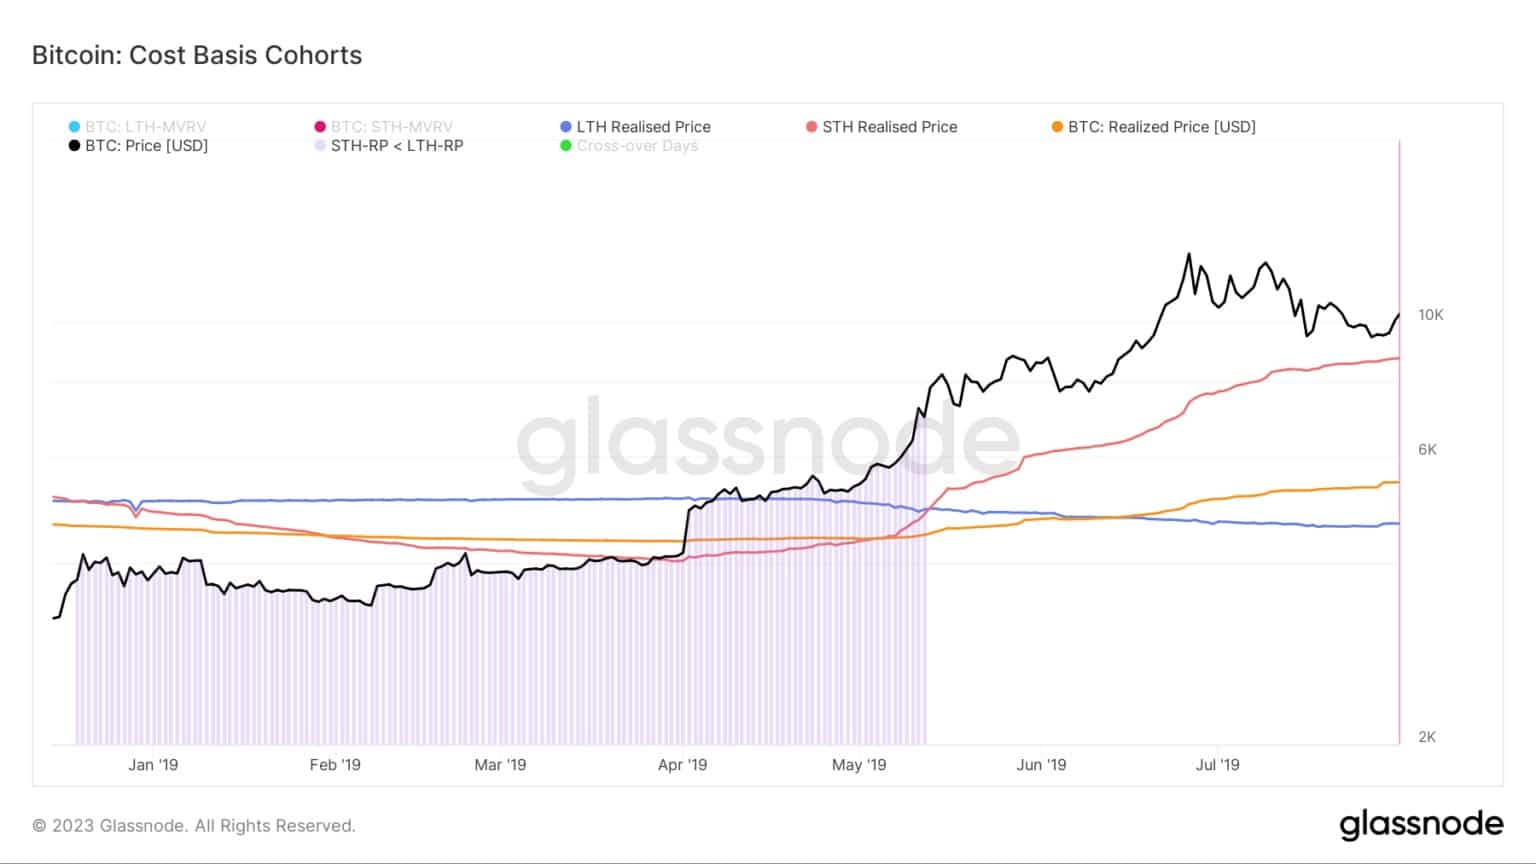 Wykres przedstawiający koszty-podstawy dla kohort Bitcoina podczas rynku niedźwiedzia 2018/2019 (Źródło: Glassnode)